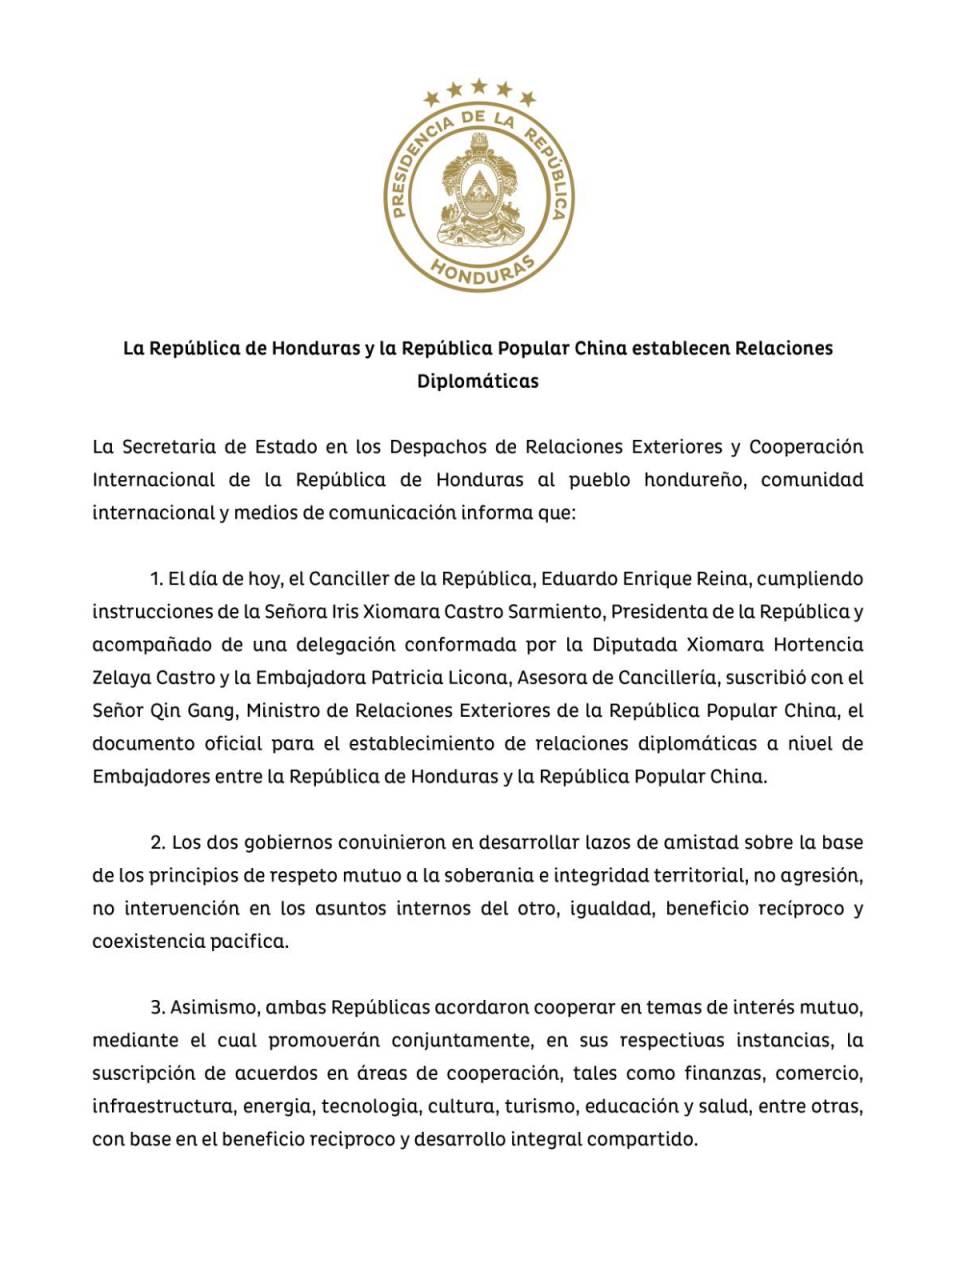 Tras romper lazos con Taiwán, Honduras oficializa relaciones diplomáticas con China